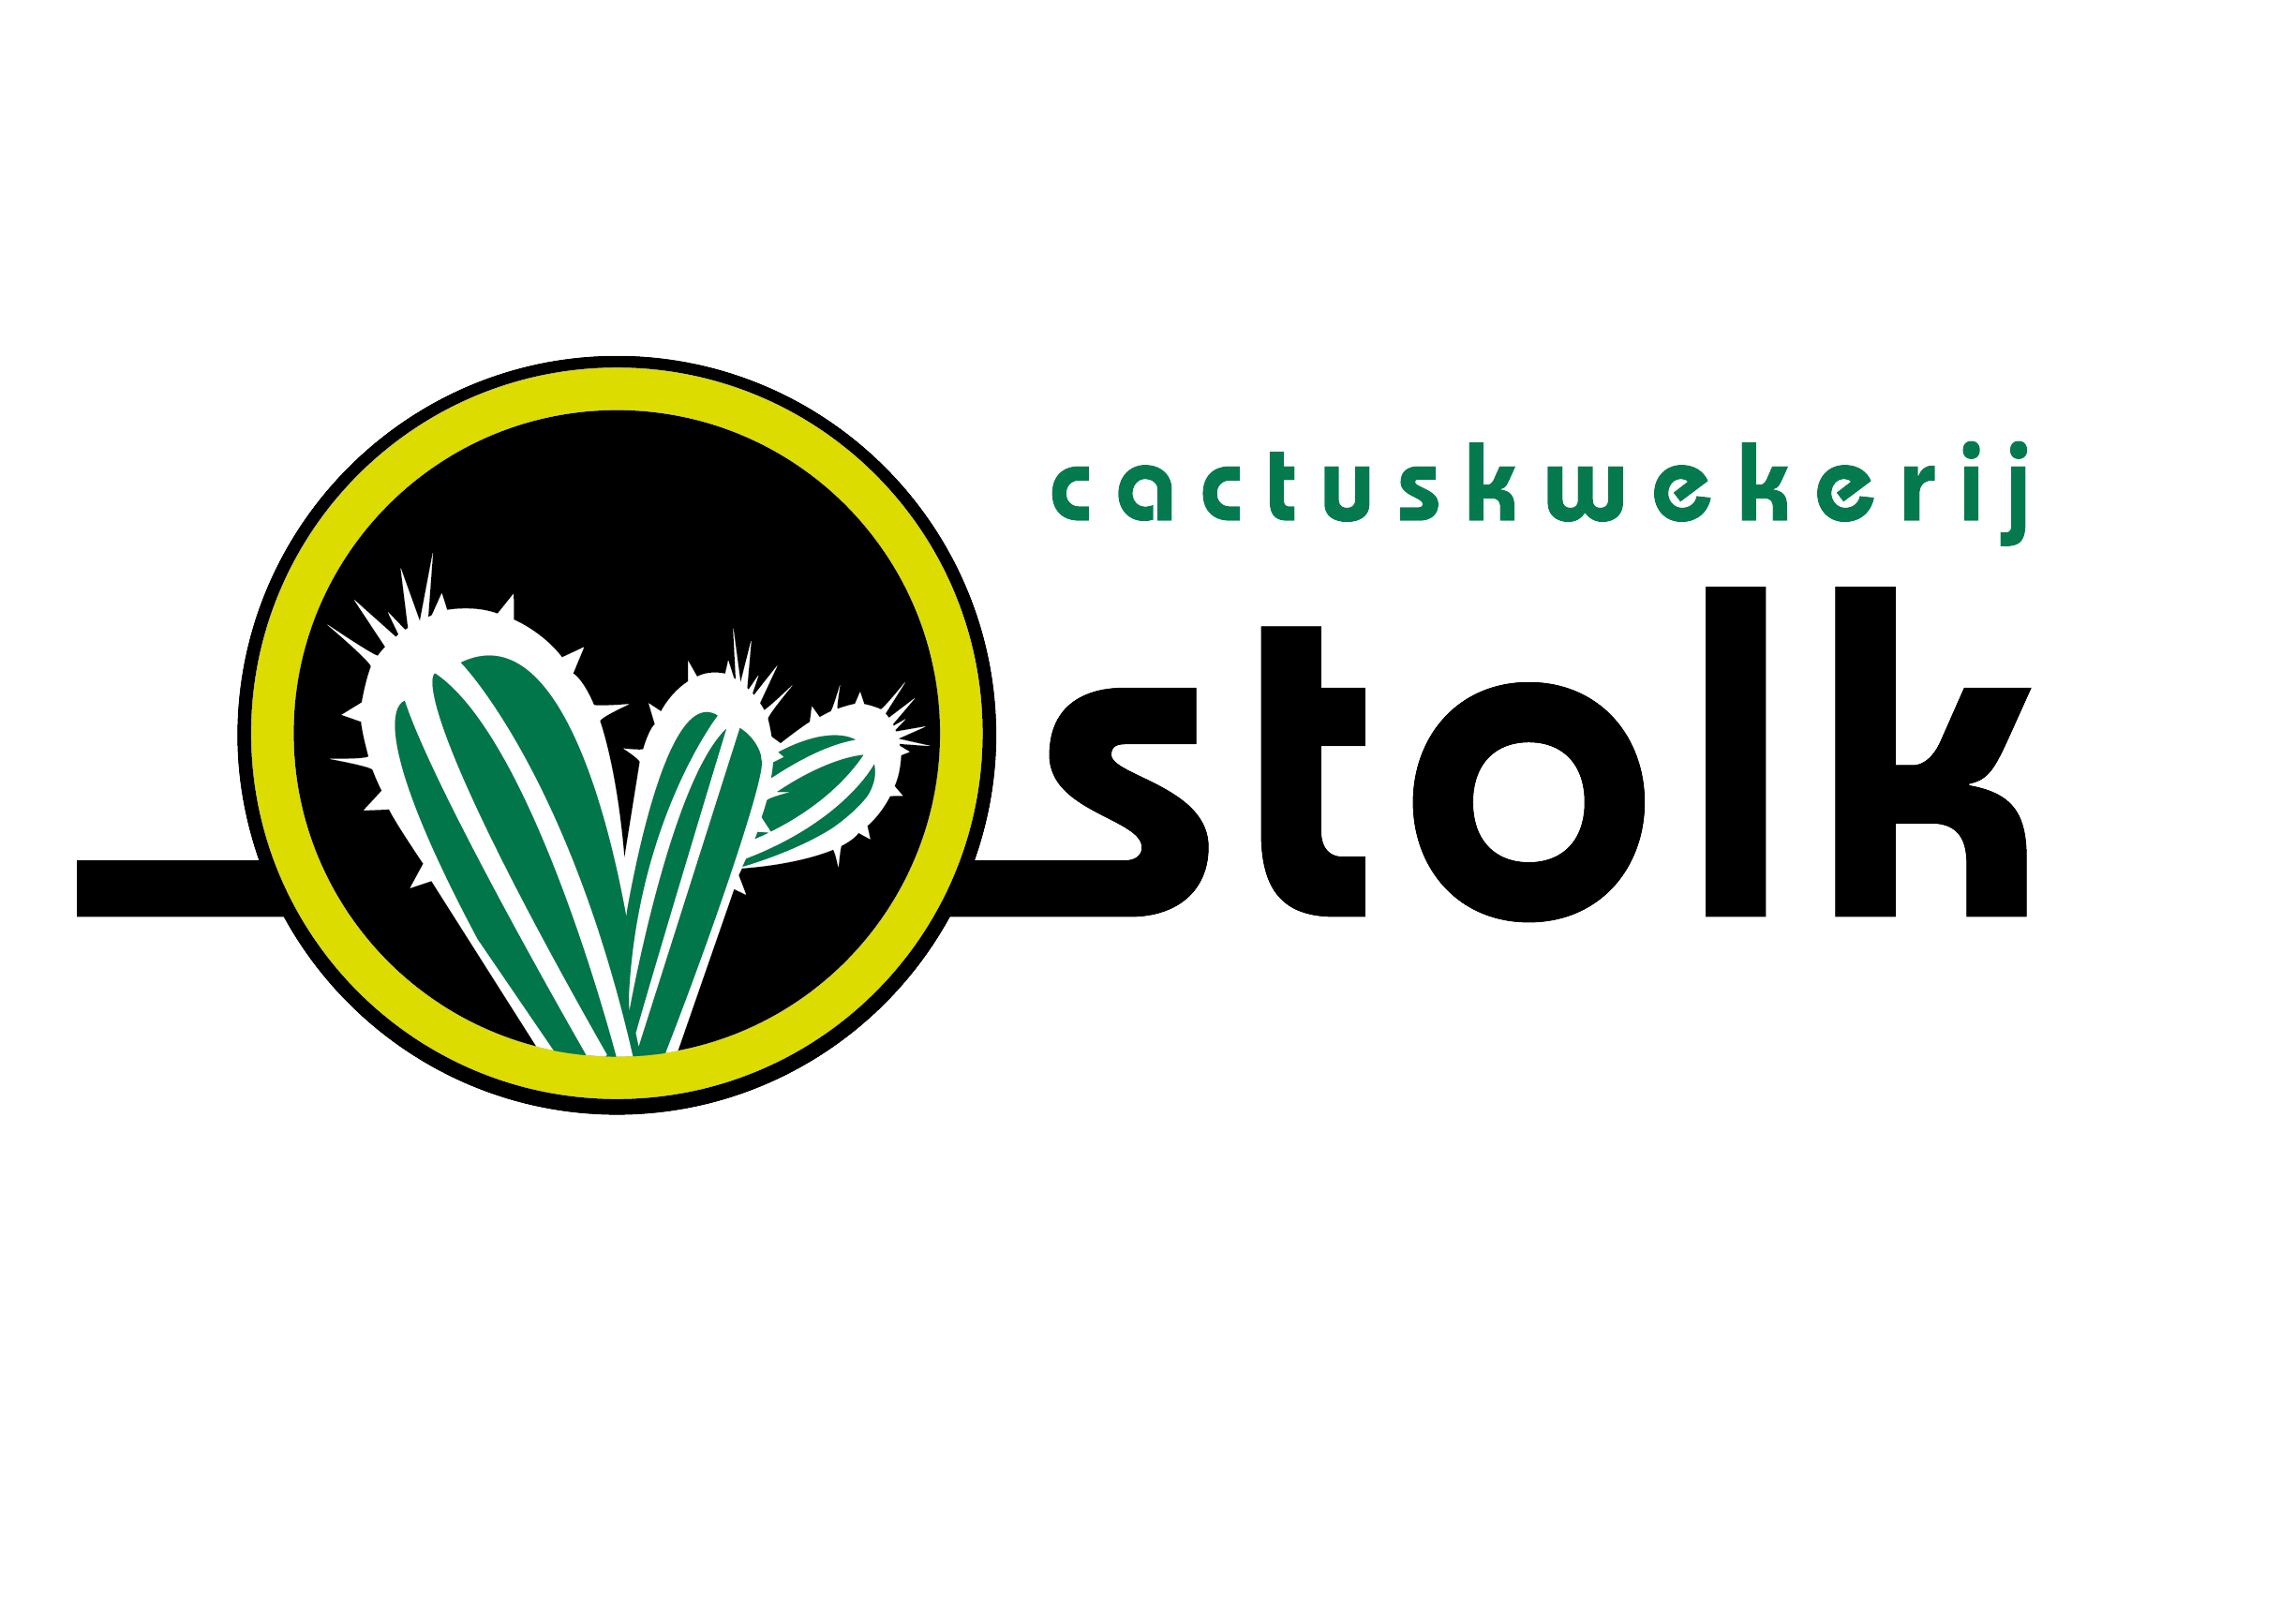 Cactuskwekerij Stolk Logo